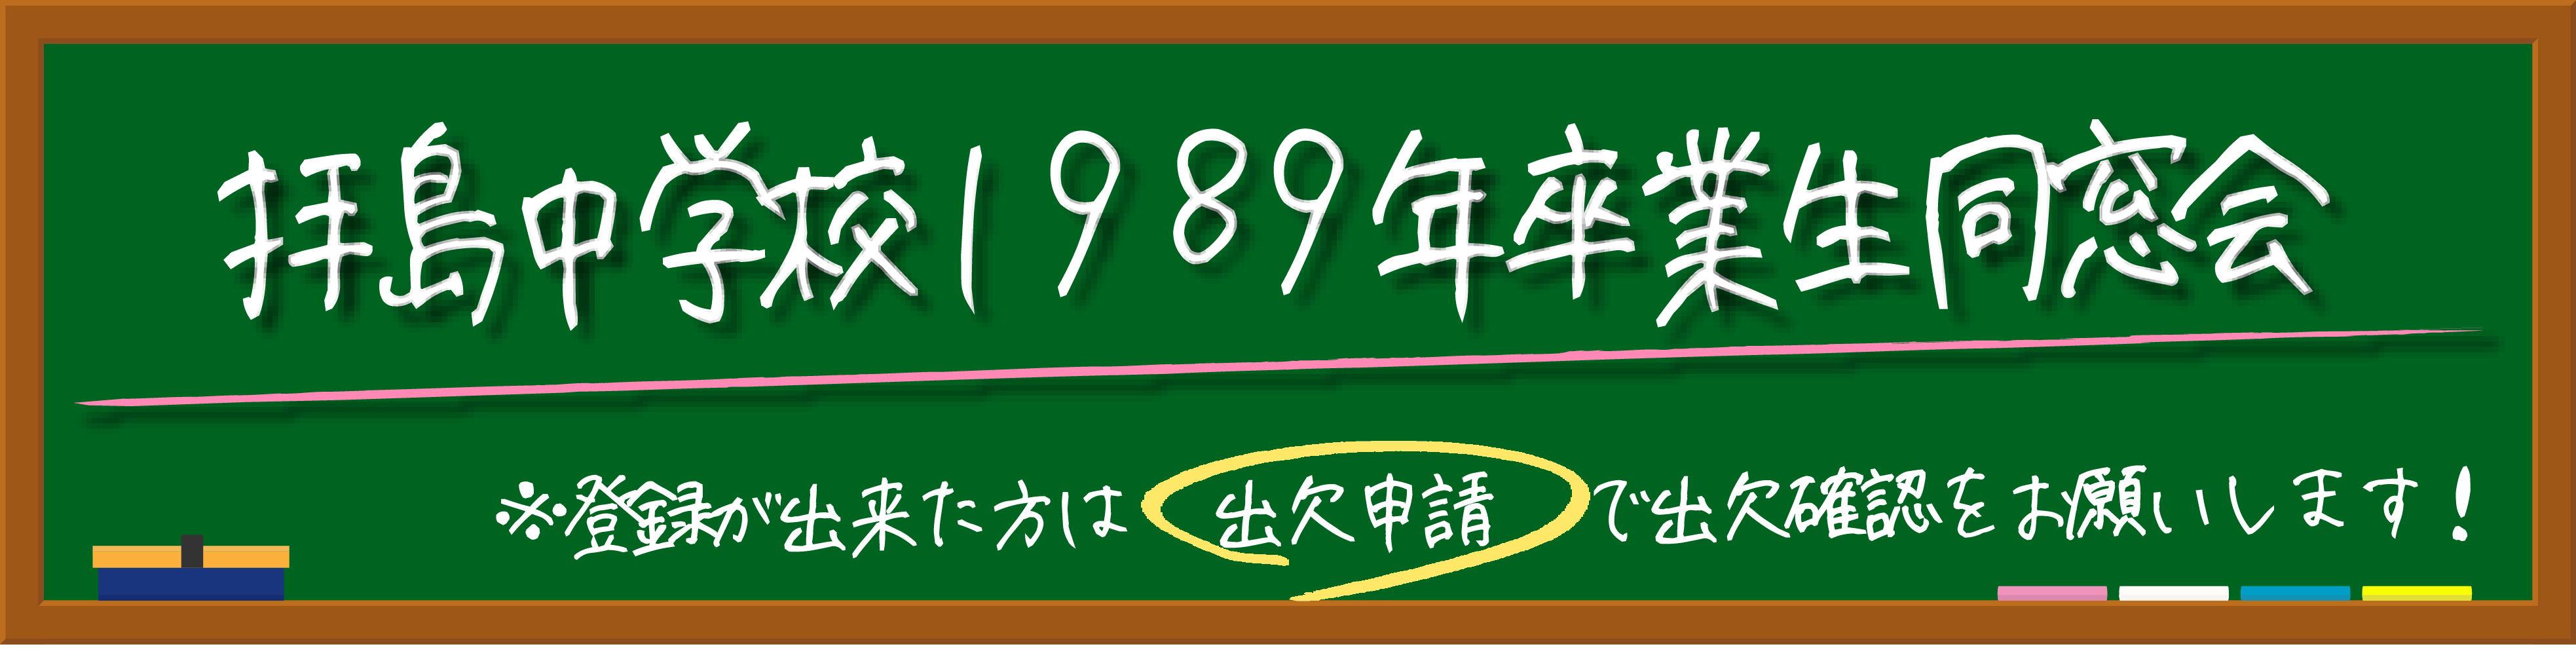 拝島中学校1989年卒業生同窓会